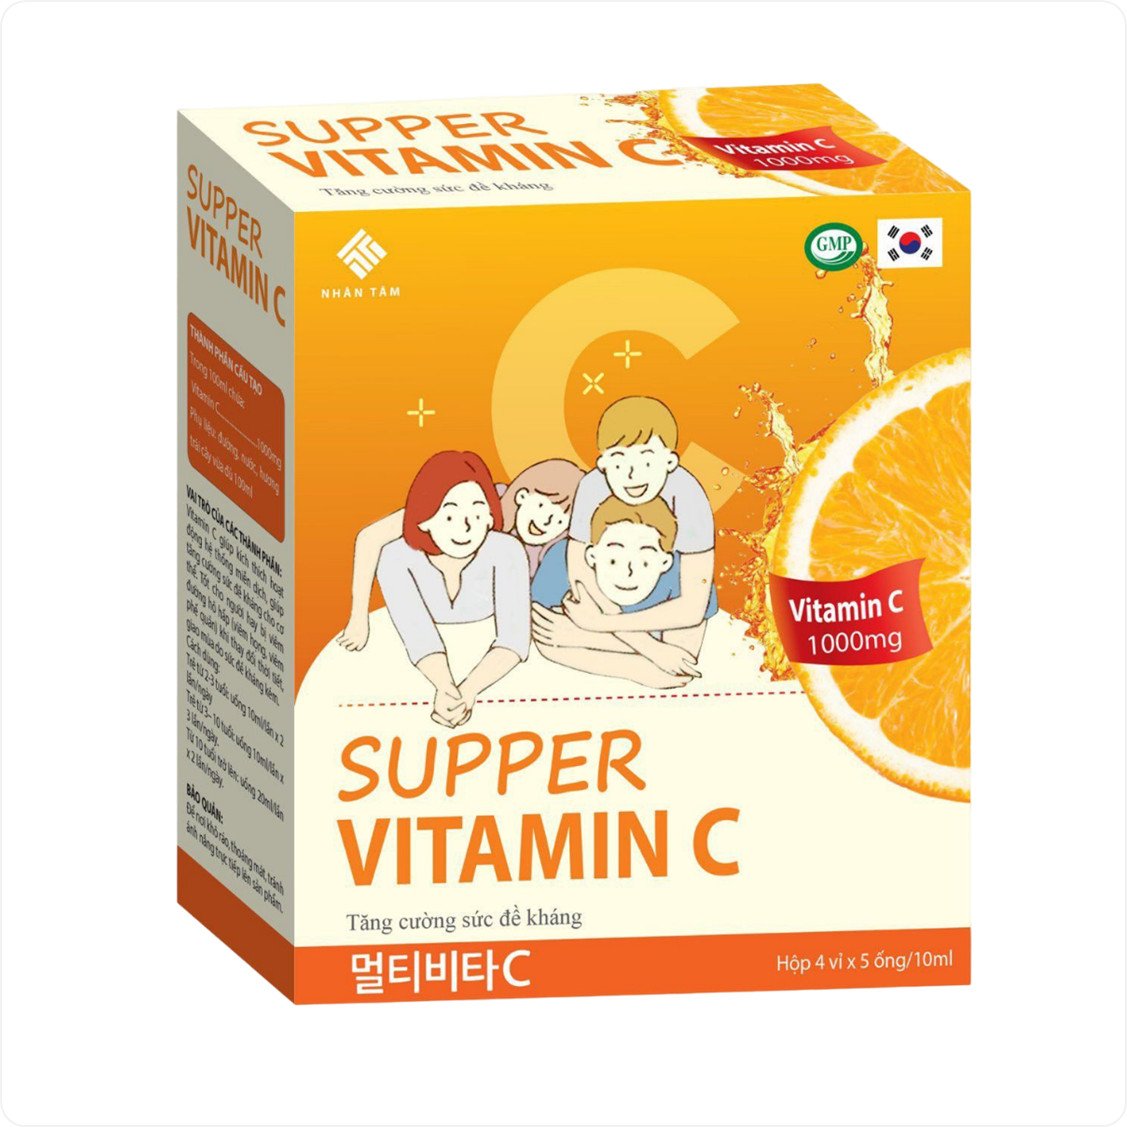 Ống uống Supper Vitamin C 1000mg bổ sung vitamin C hỗ trợ kích thích tiêu